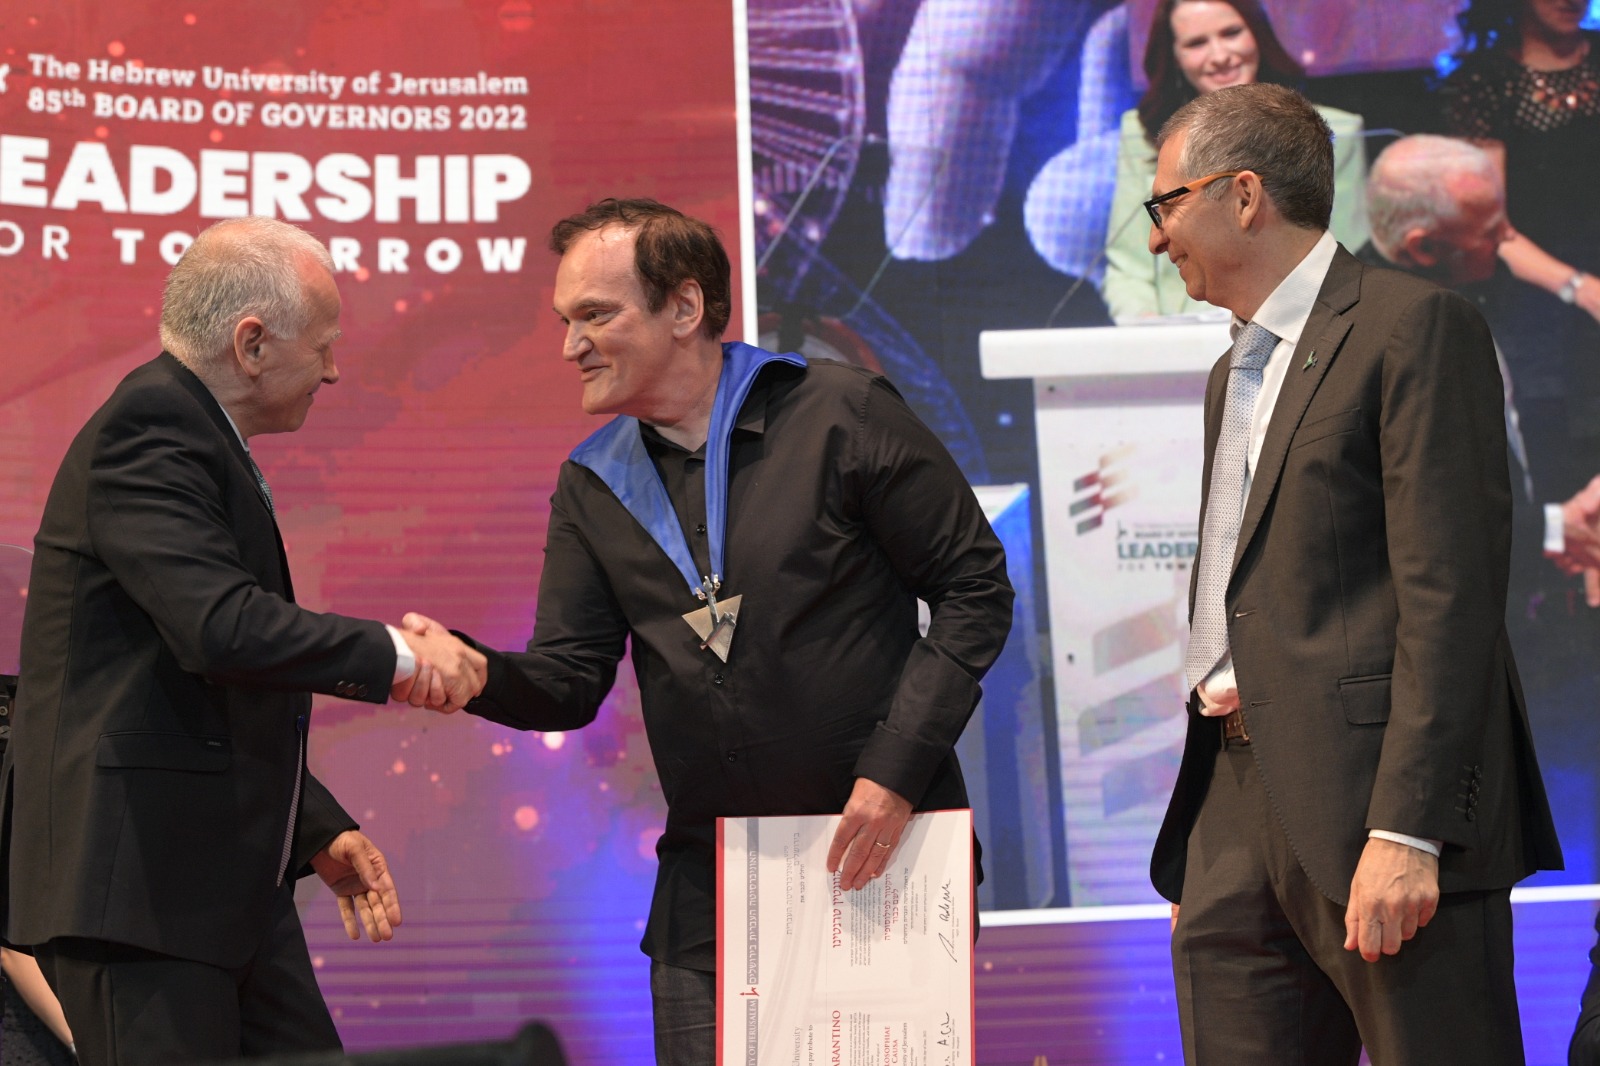 El Prof. Asher Cohen saluda a Quentin Tarantino al recibir el Doctorado Honoris Causa de la Universidad Hebrea de Jerusalem. Lo Acompaña el Rector, Prof. Barak Medina | Foto: Bruno Cherbit